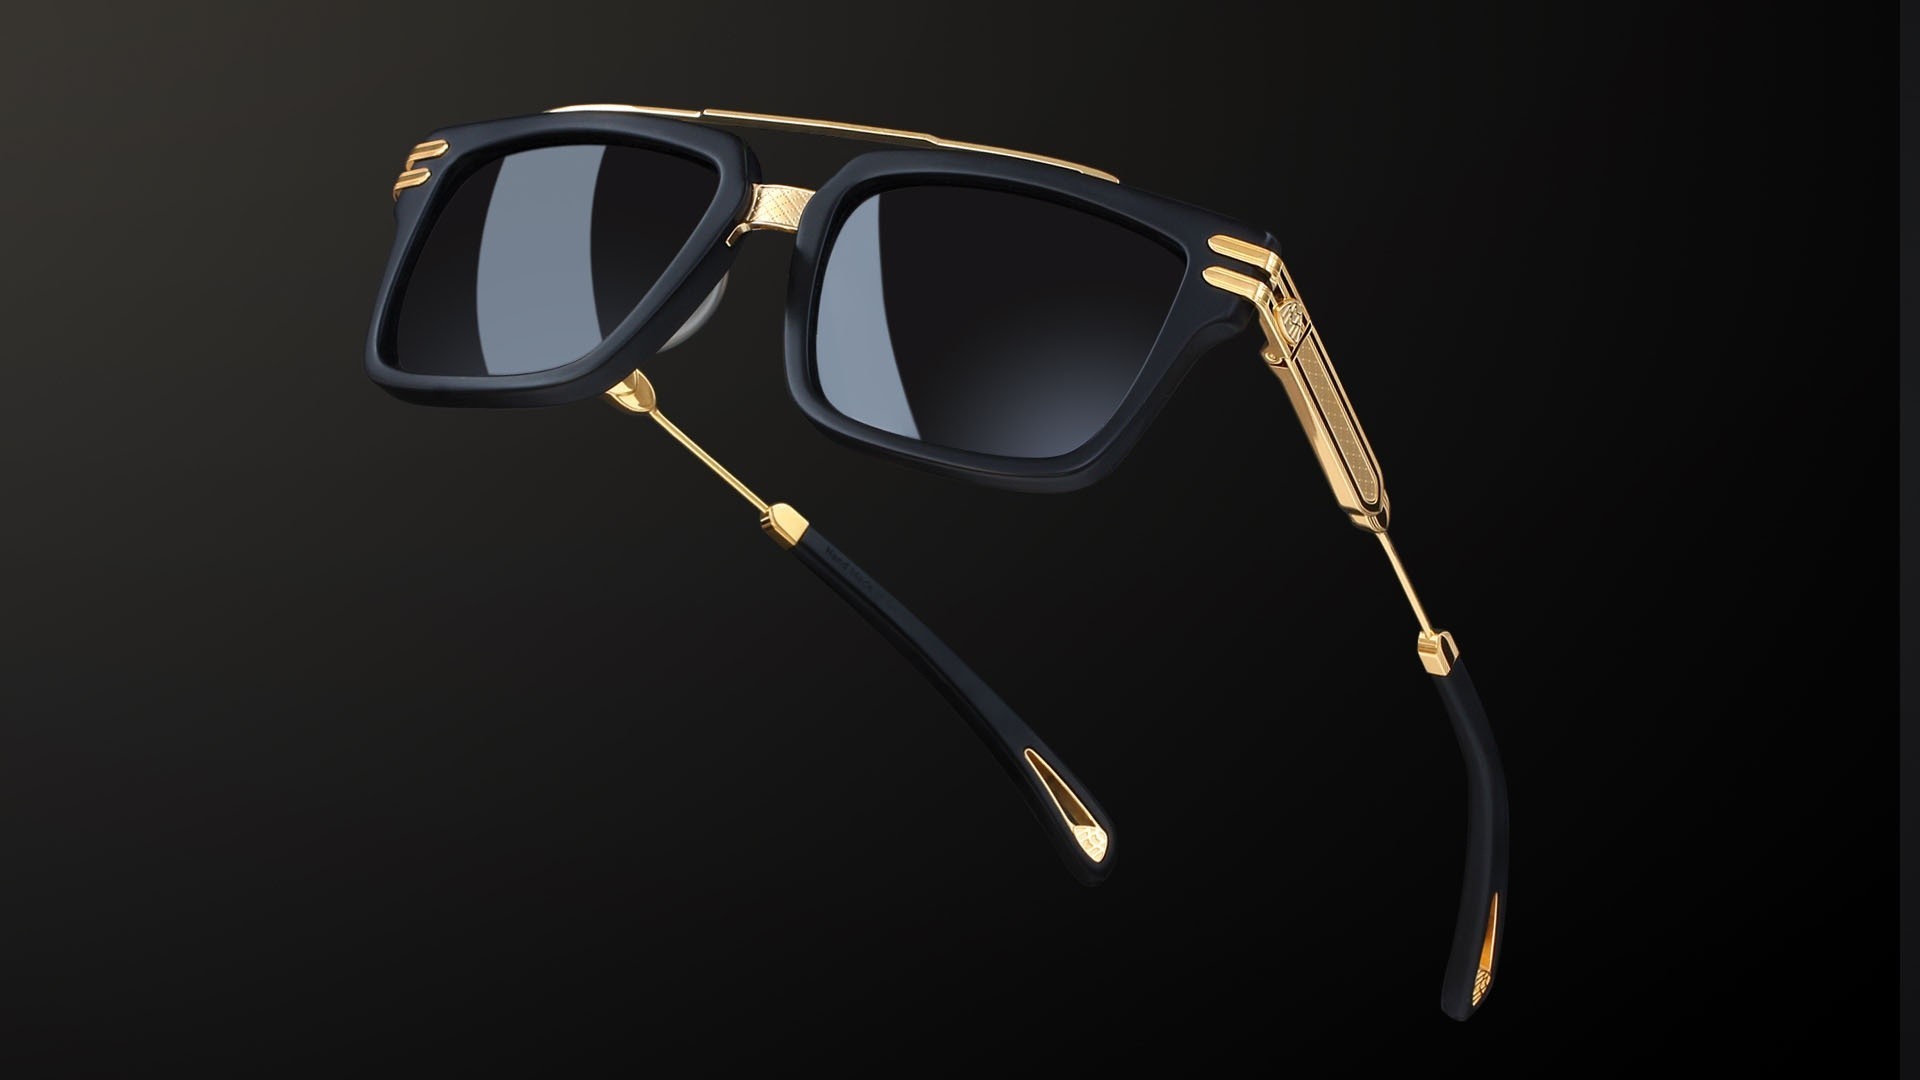 Nahaufnahme von einer Maybach Sonnebrille mit goldenen Details und schwarzem Hintergrund.